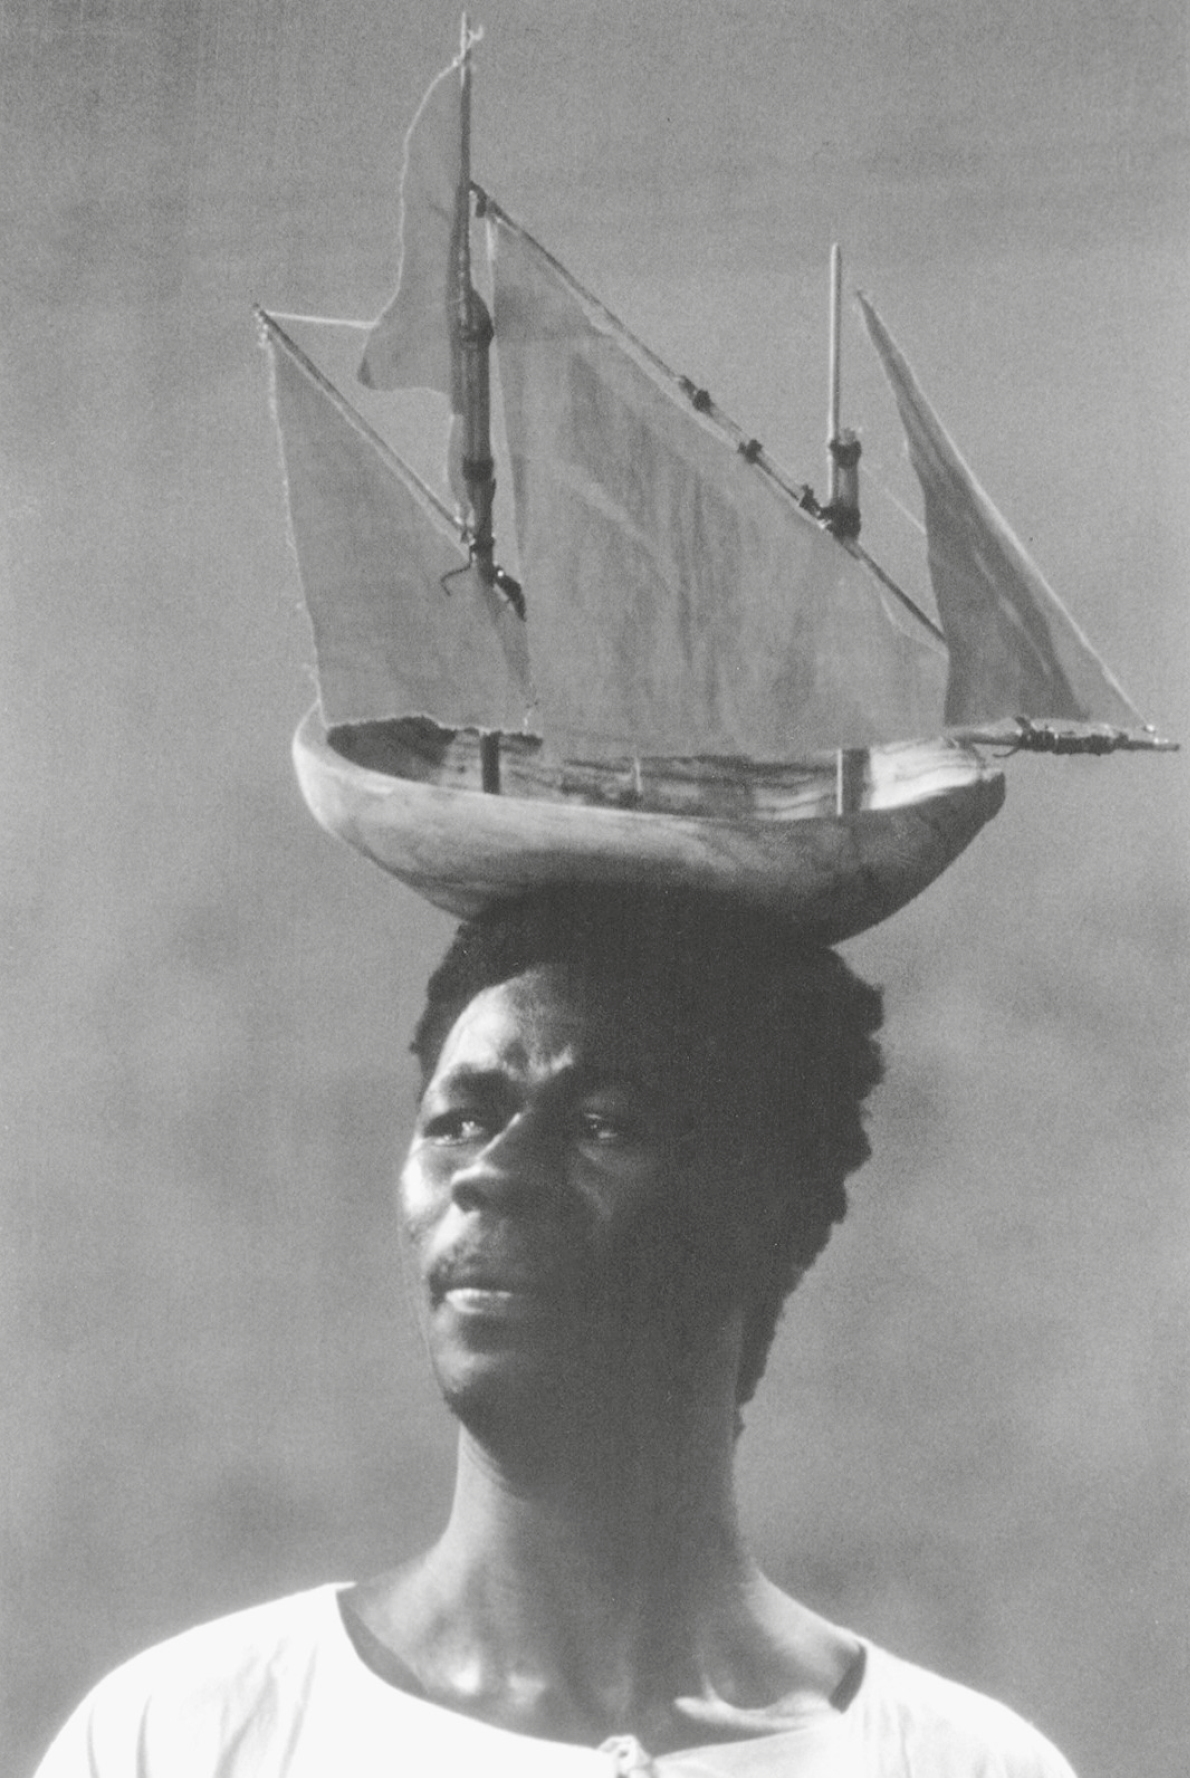 Fotografia em preto e branco. Retrato em meio perfil de um homem usando camiseta branca. Ele tem acima da cabeça, como um chapéu, um barco à vela, feito de madeira e tecido. Ele tem postura altiva e expressão séria.